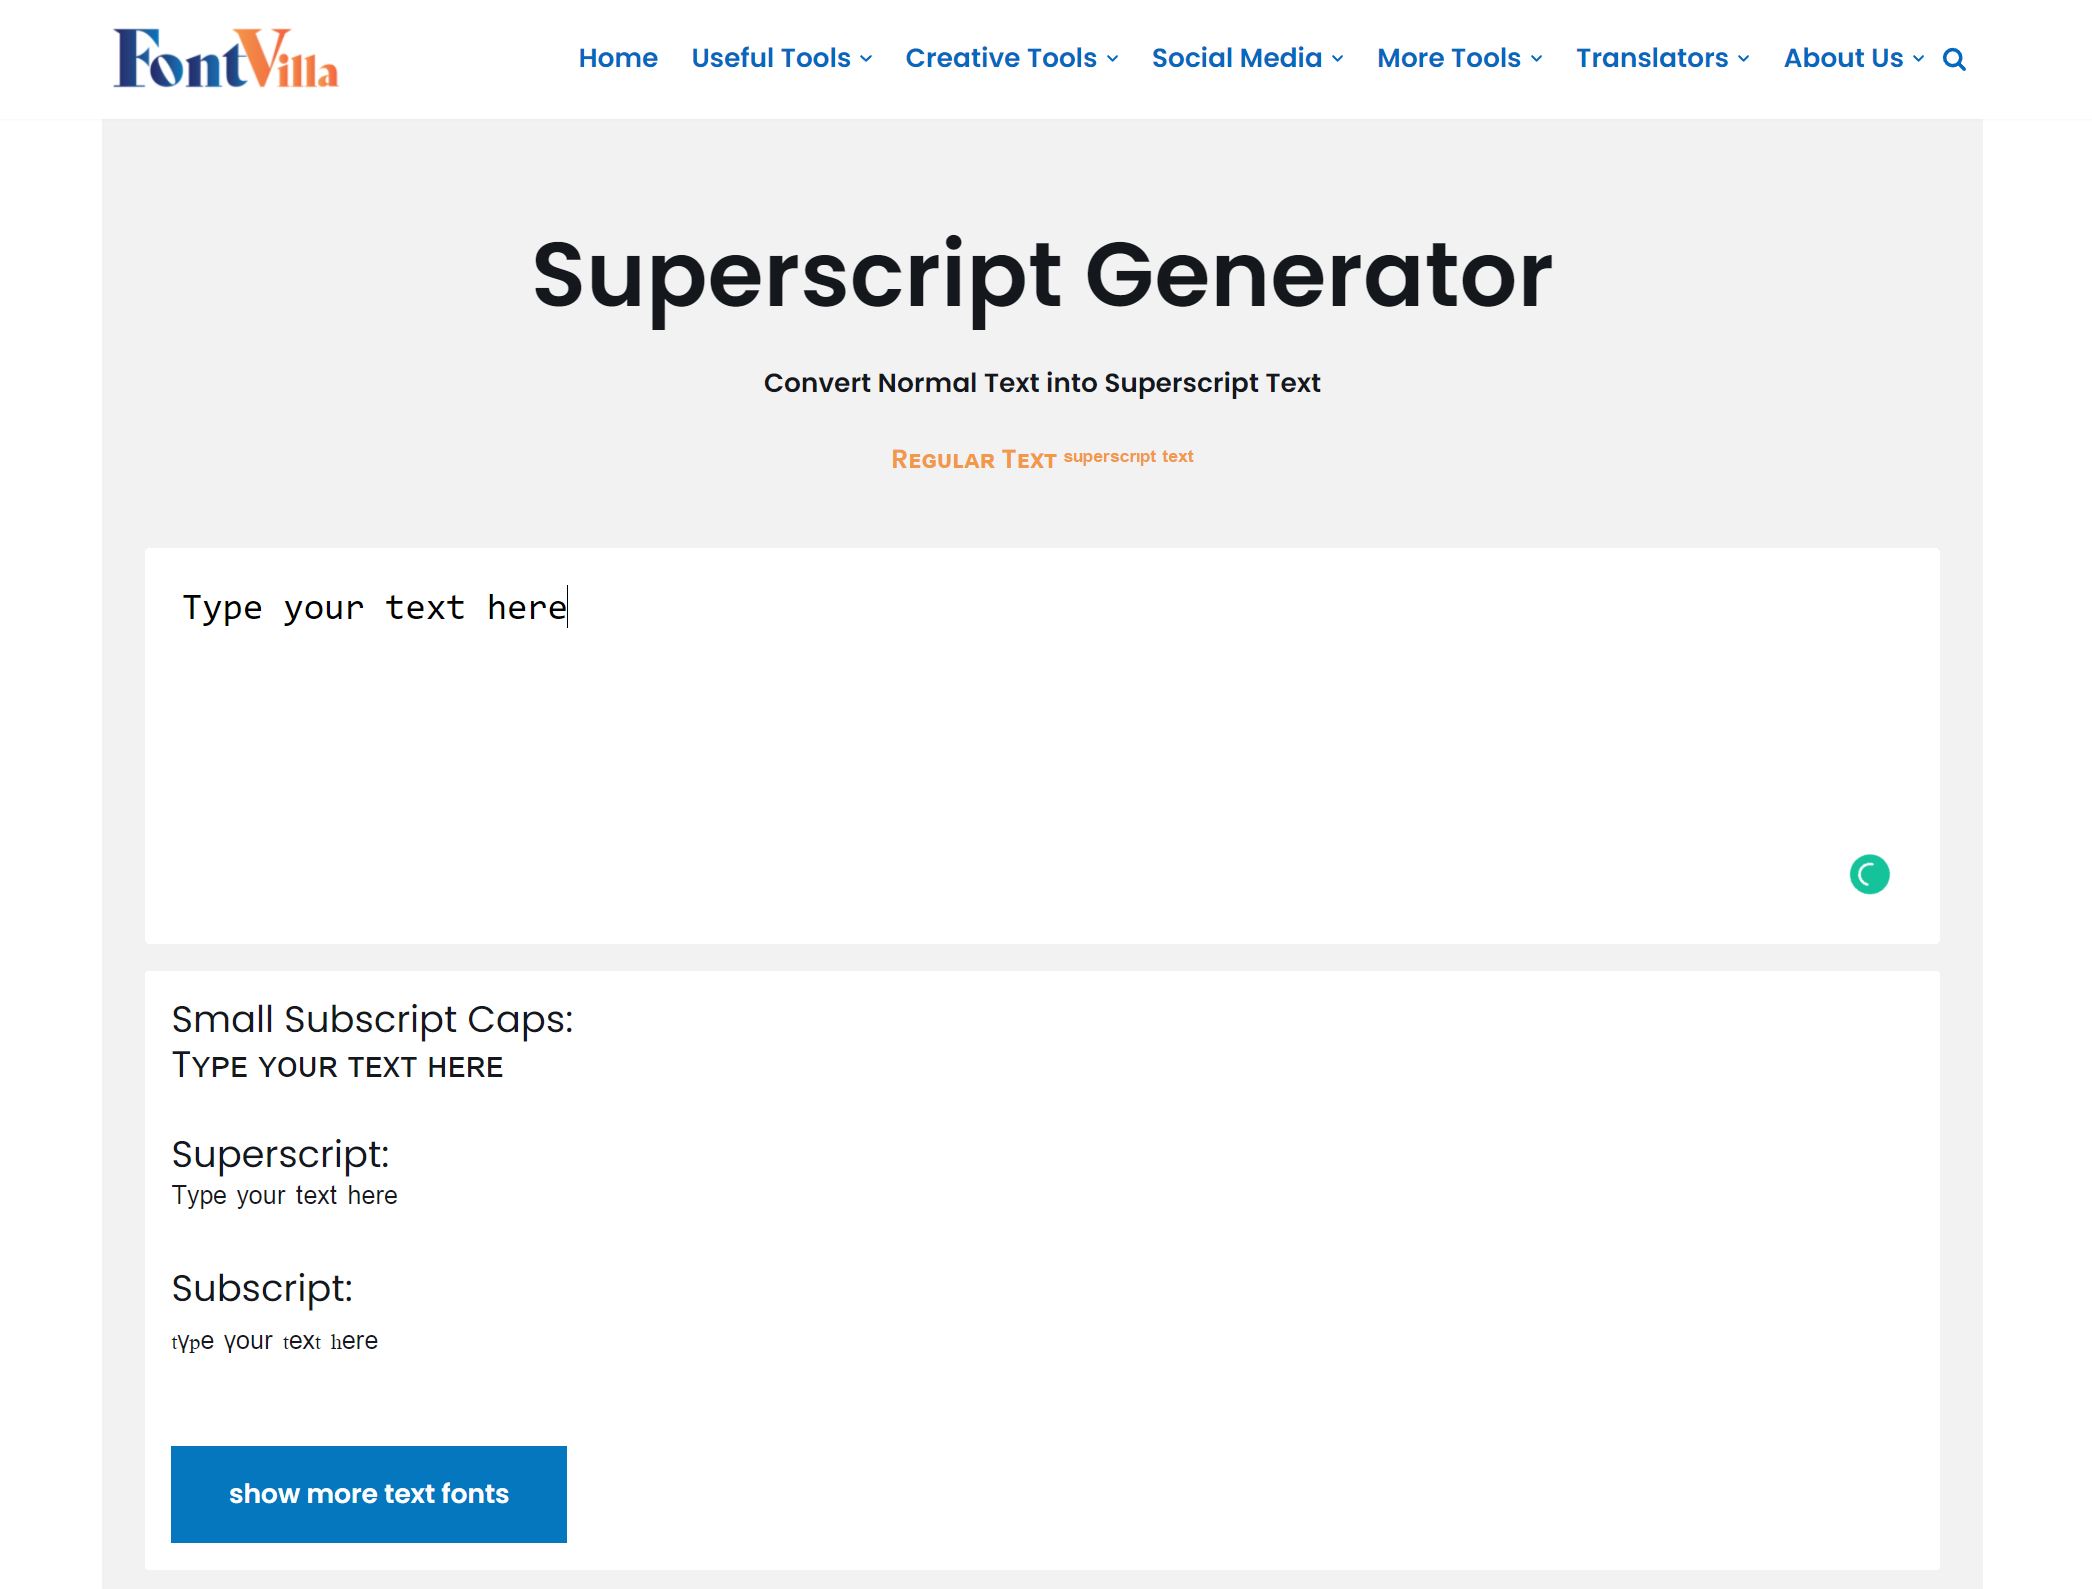 Superscript text generator